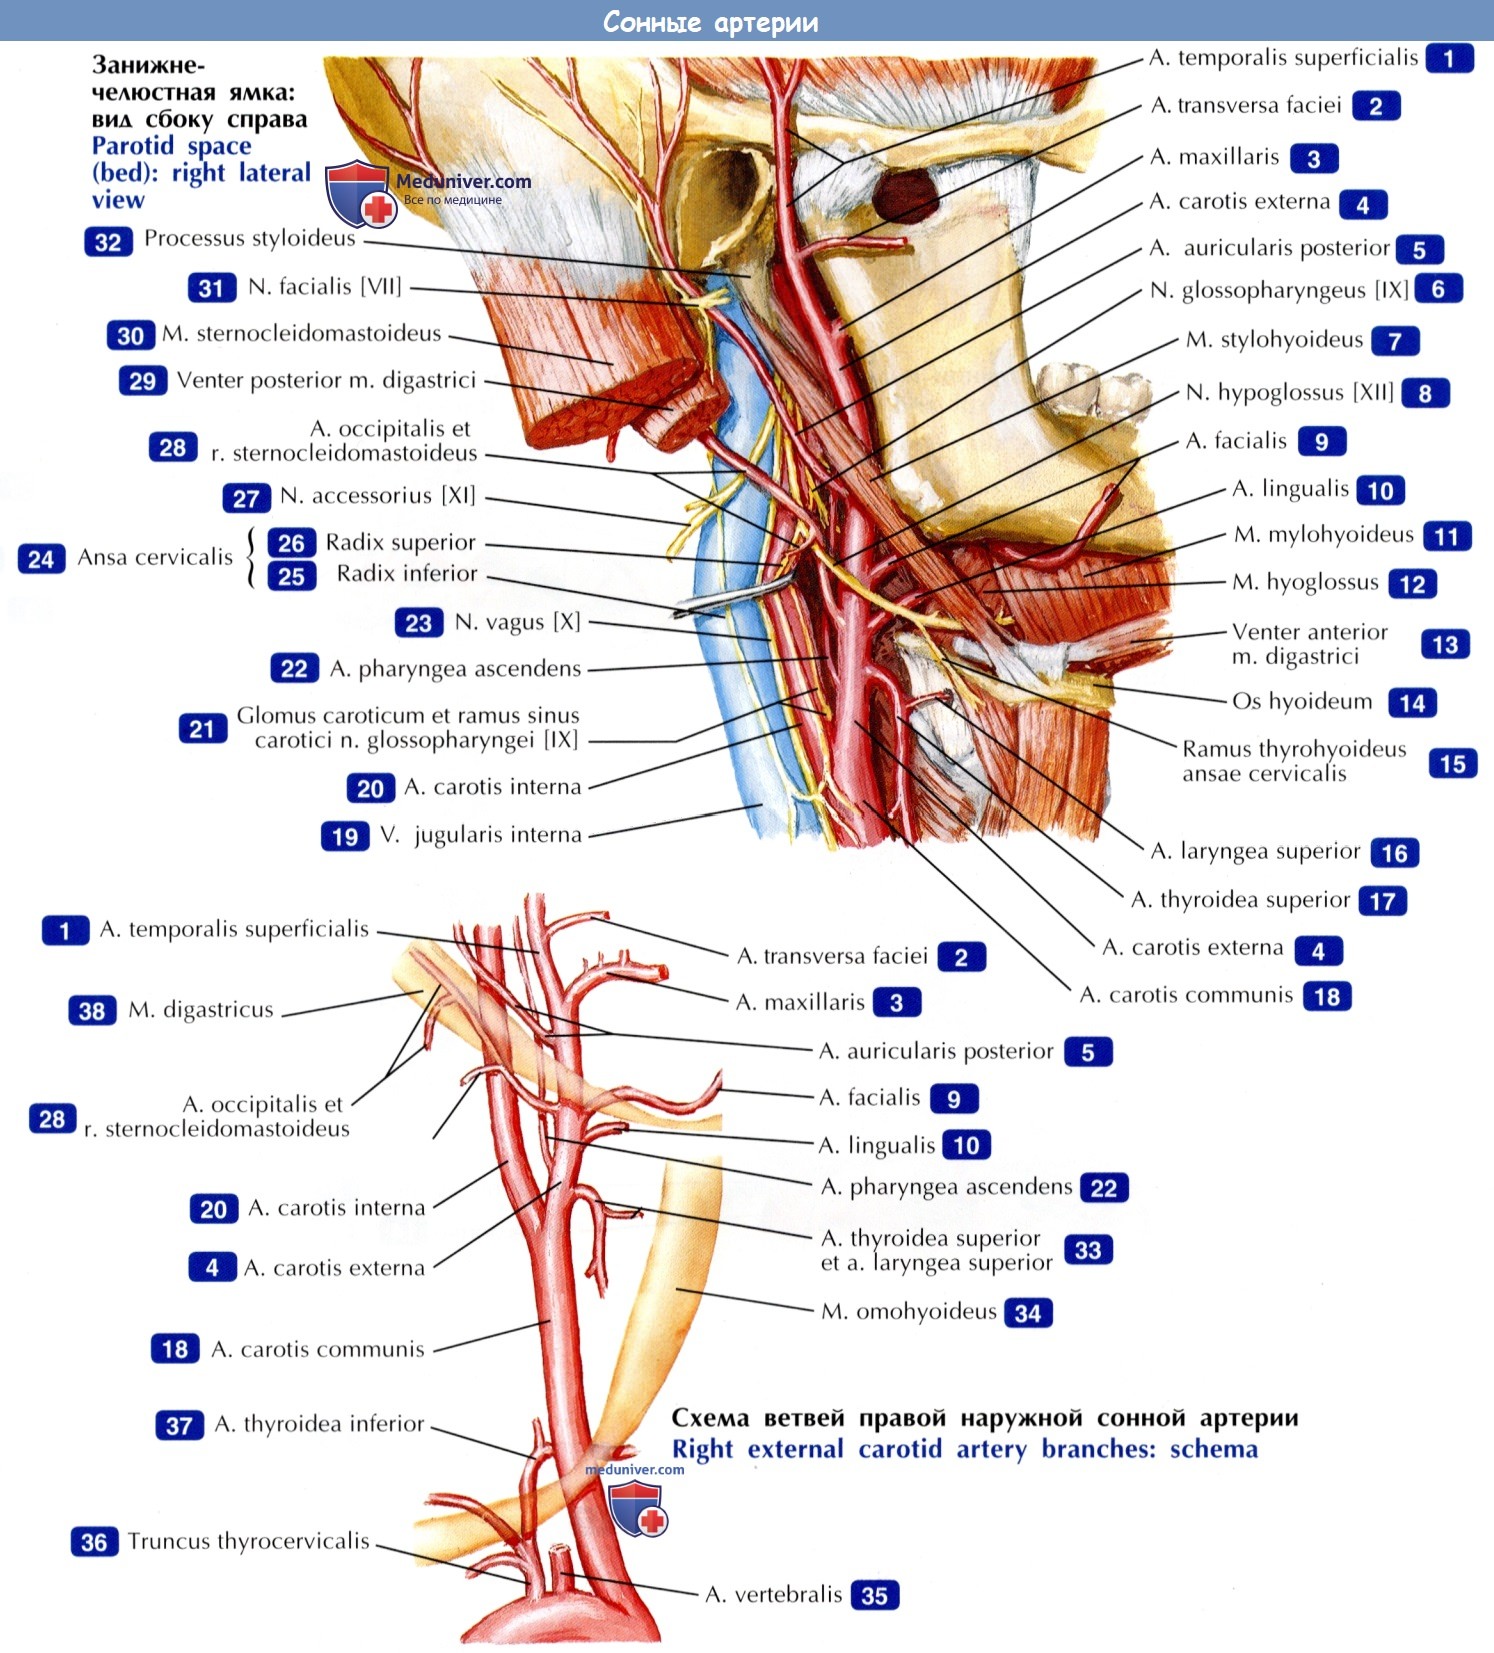 Сонные артерии - по атласу анатомии